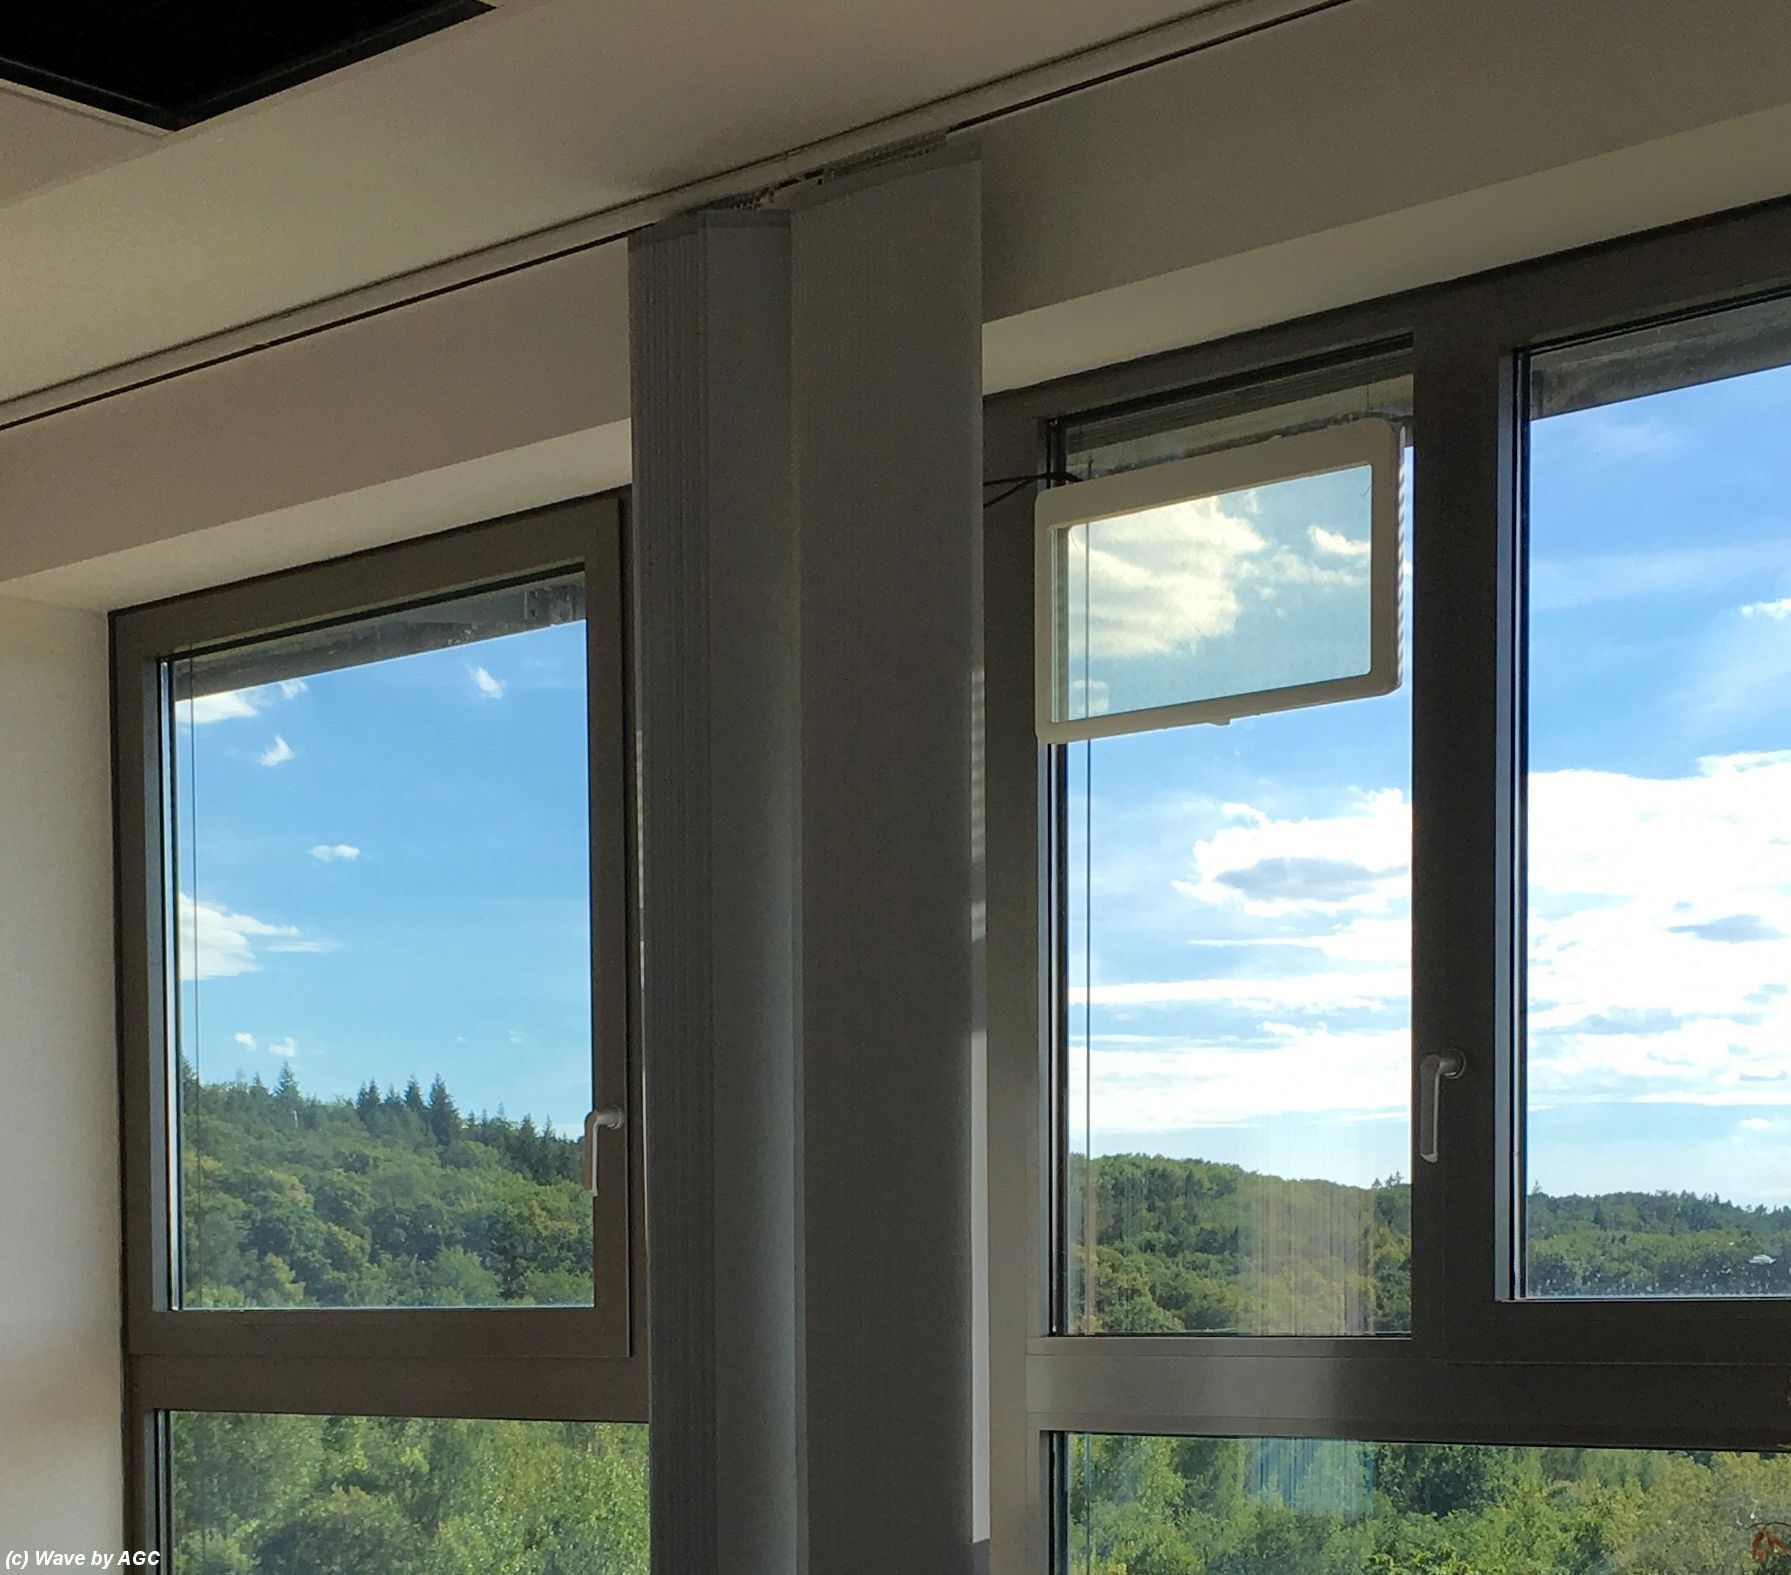 Průhledné skleněné antény a okenní sklo s nižším útlumem signálu